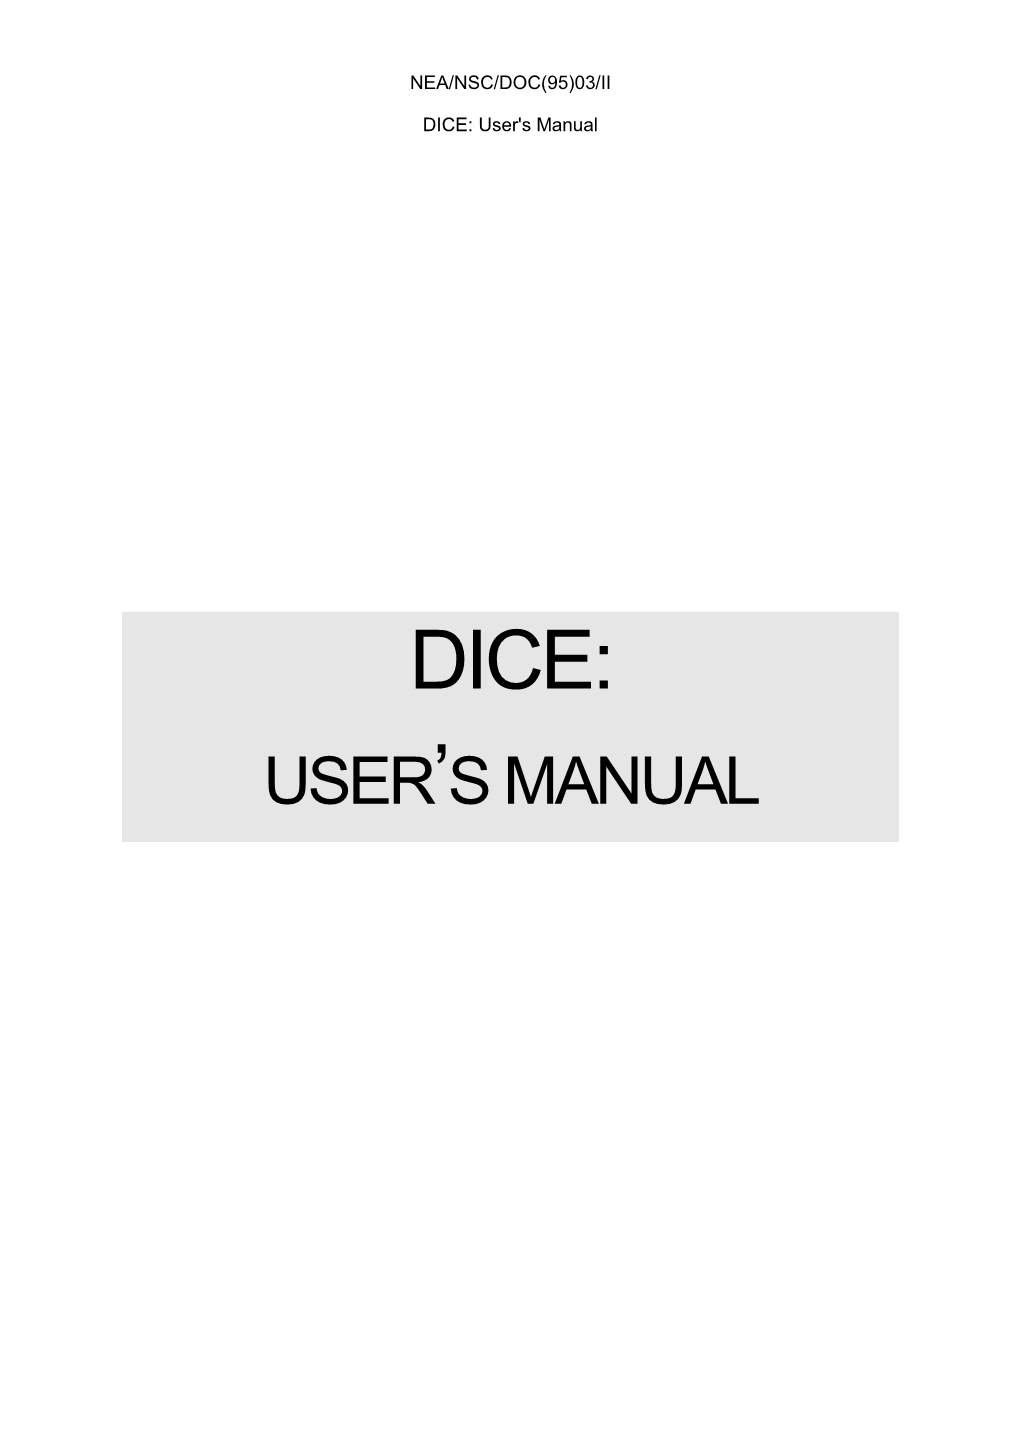 DICE: User's Manual